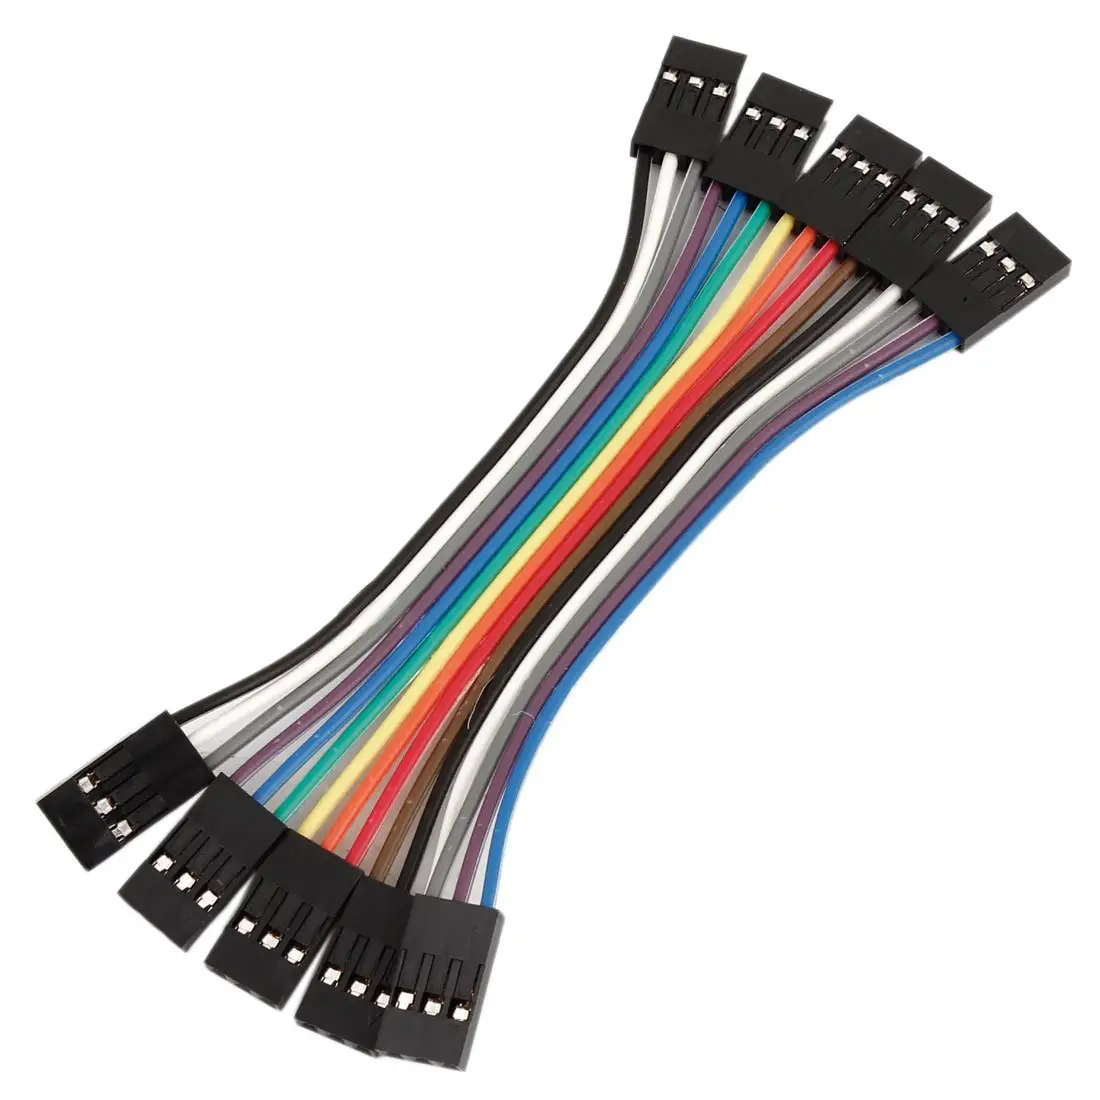 Çok renkli Dupont tel 40pin erkek kadın 20Cm Breadboard Arduino projeleri ile uyumlu aktarma kabloları şerit kablolar kiti